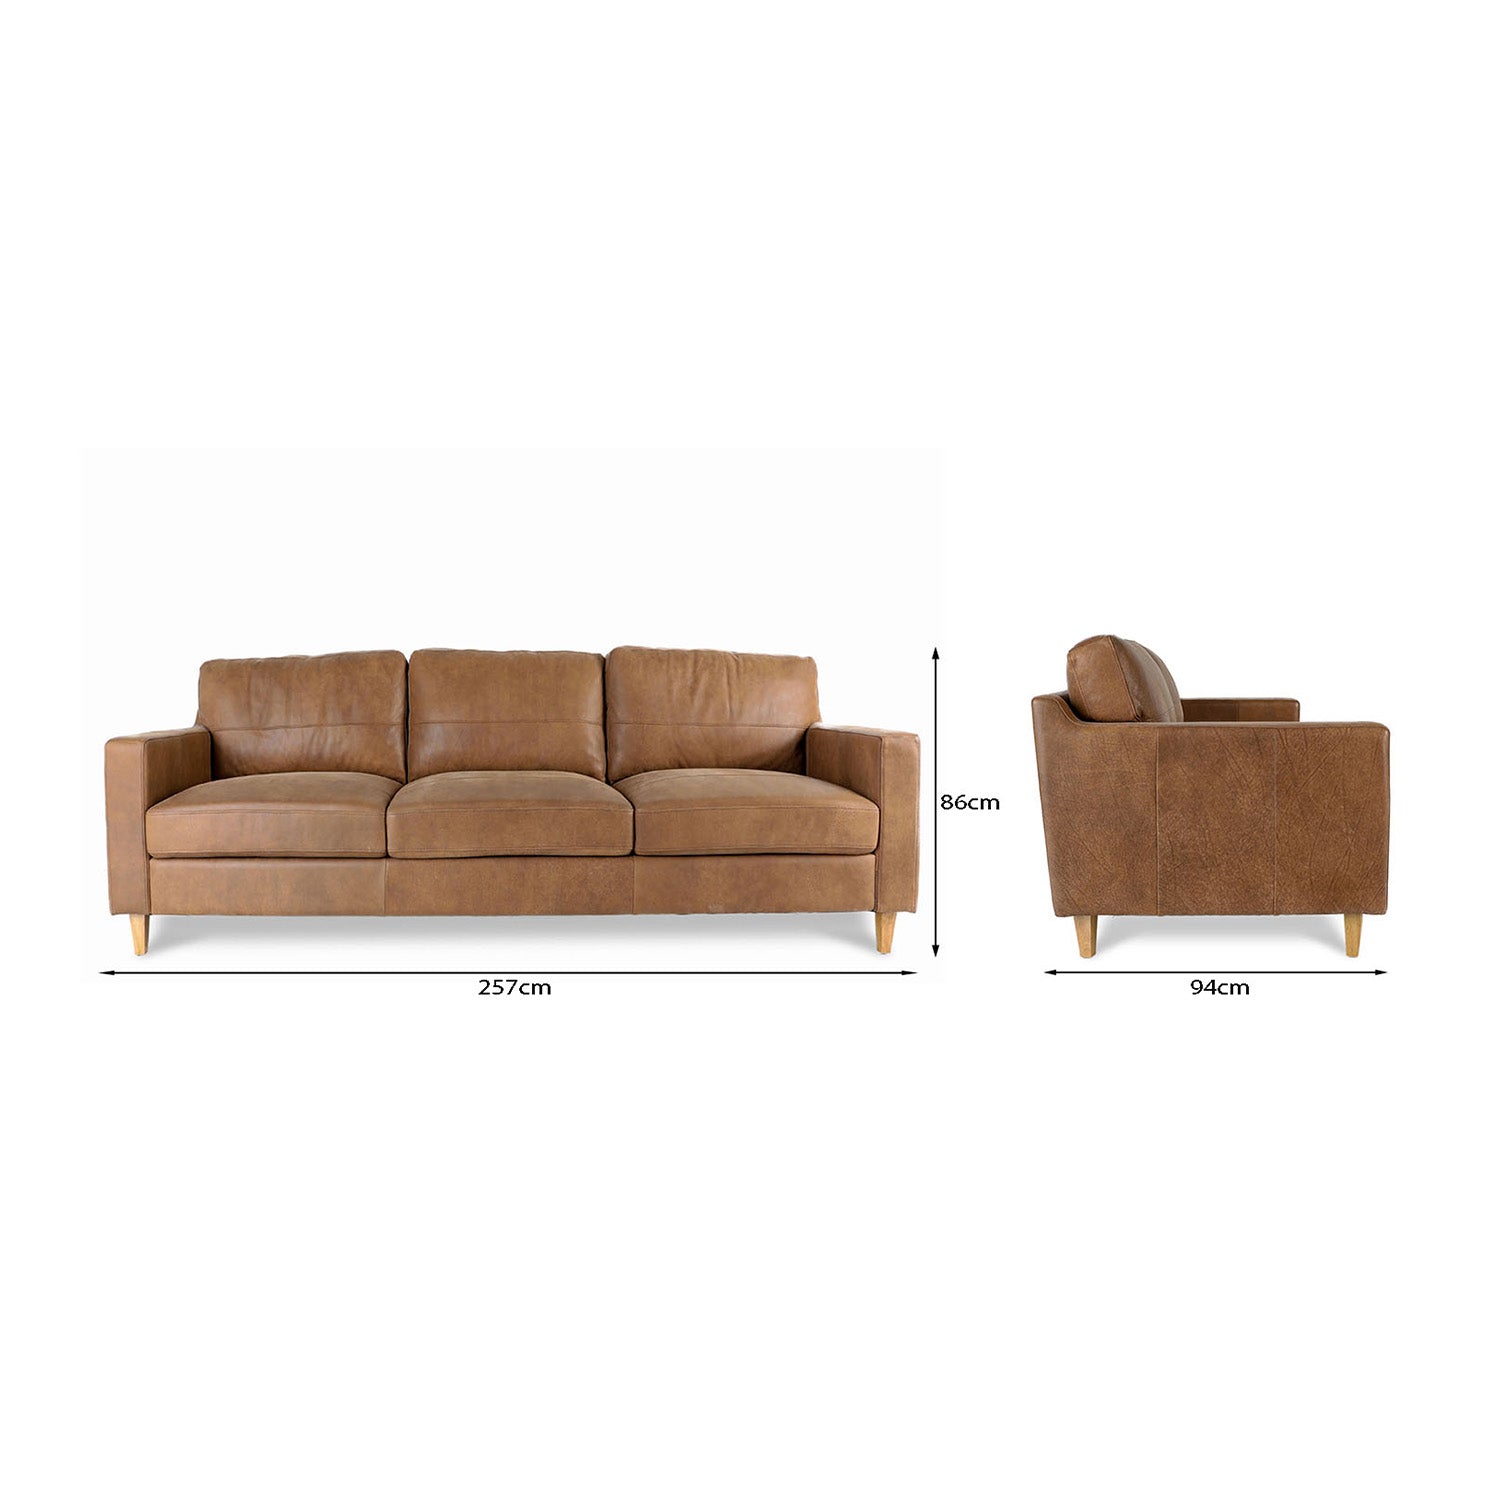 Cara Leather 3.5 Seat Sofa